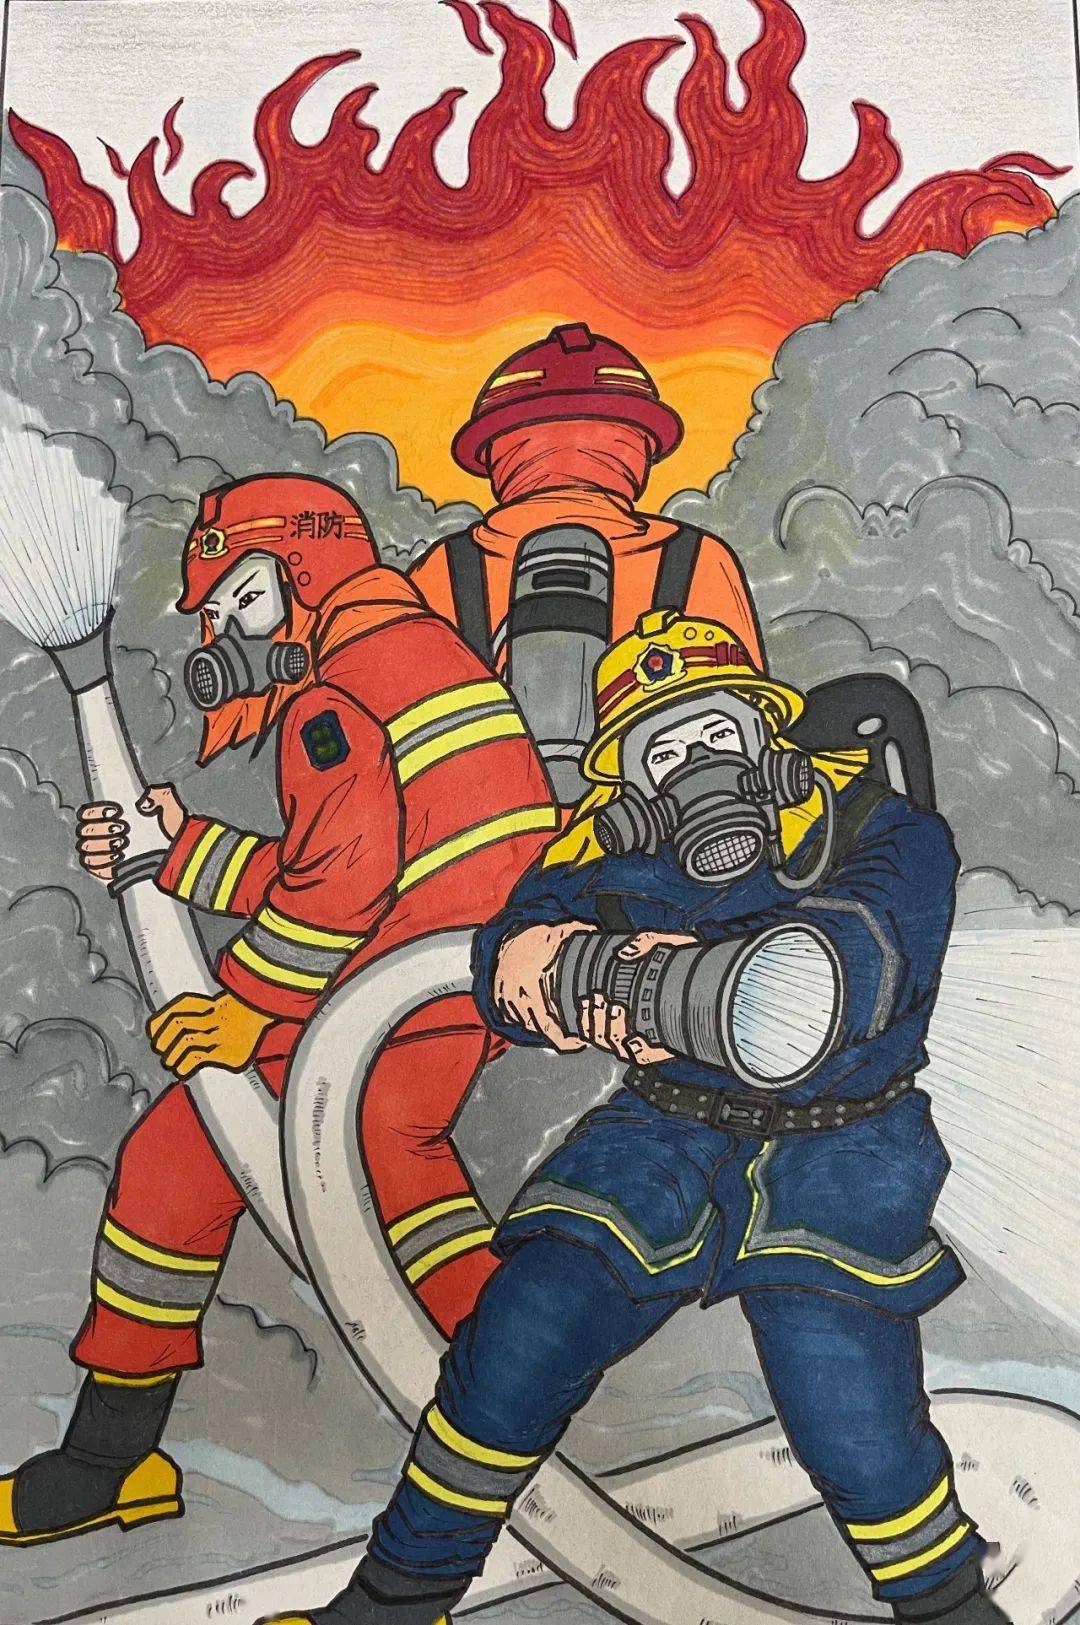 我心中的消防绘画初中图片